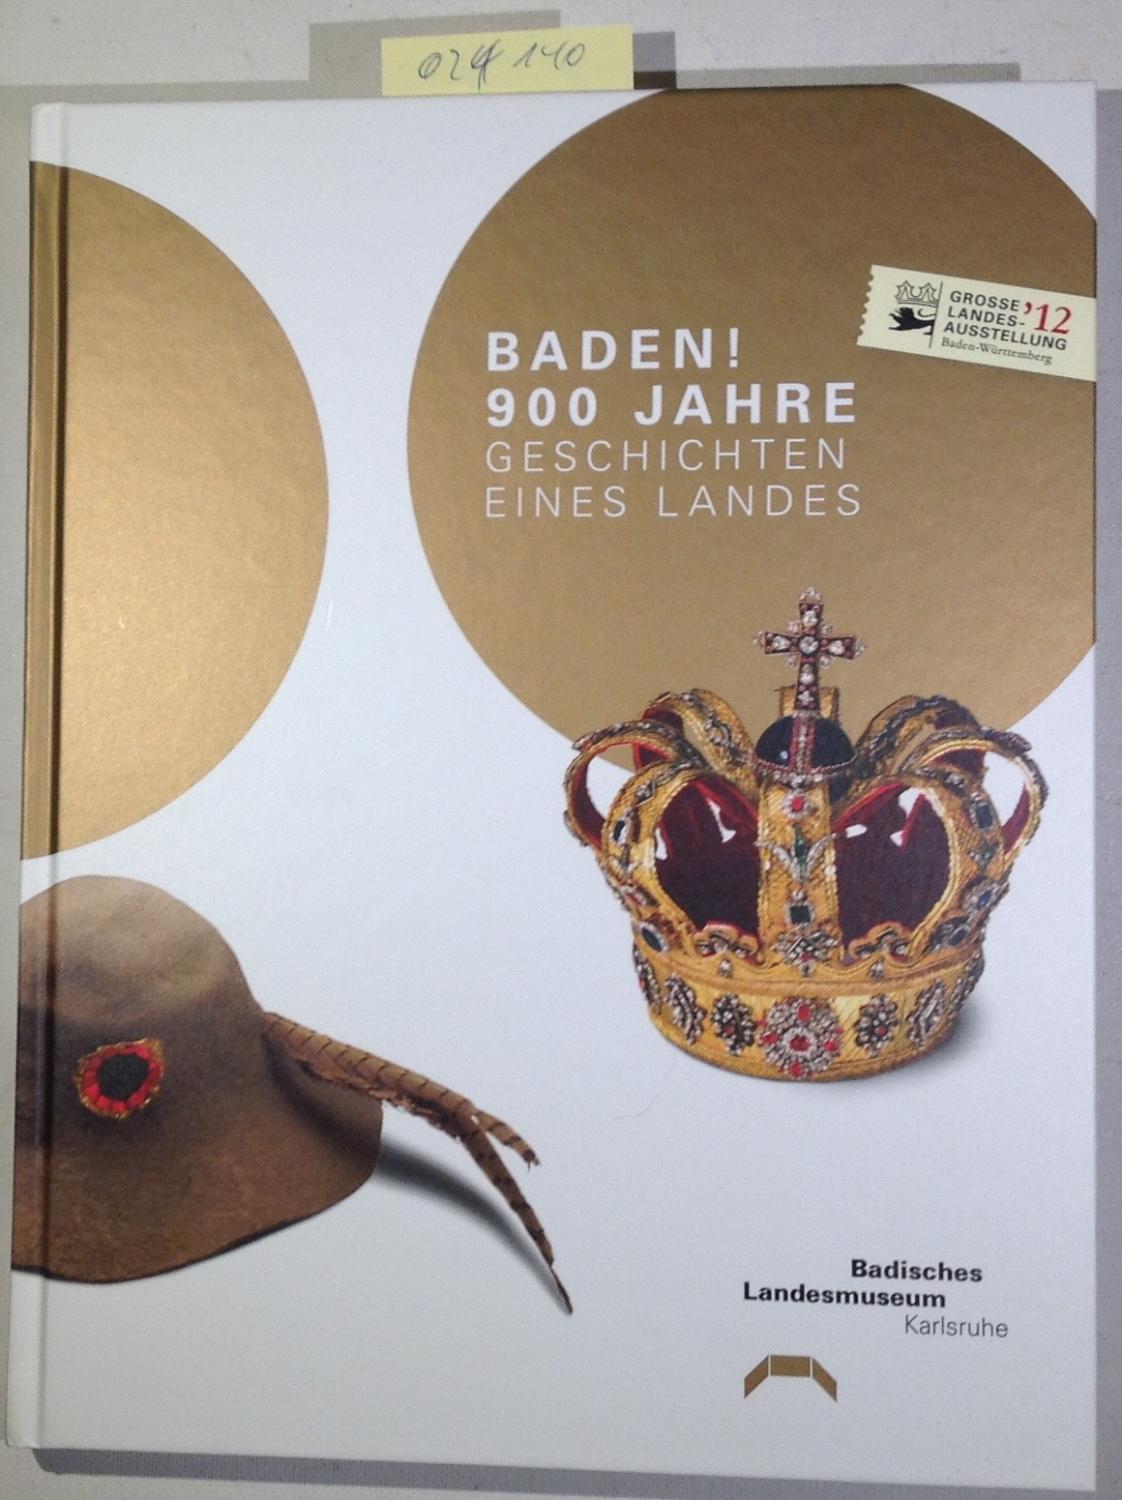 Baden! 900 Jahre : (Bi7h) [anlässlich der Großen Landesausstellung "Baden! 900 Jahre. Geschichten eines Landes"